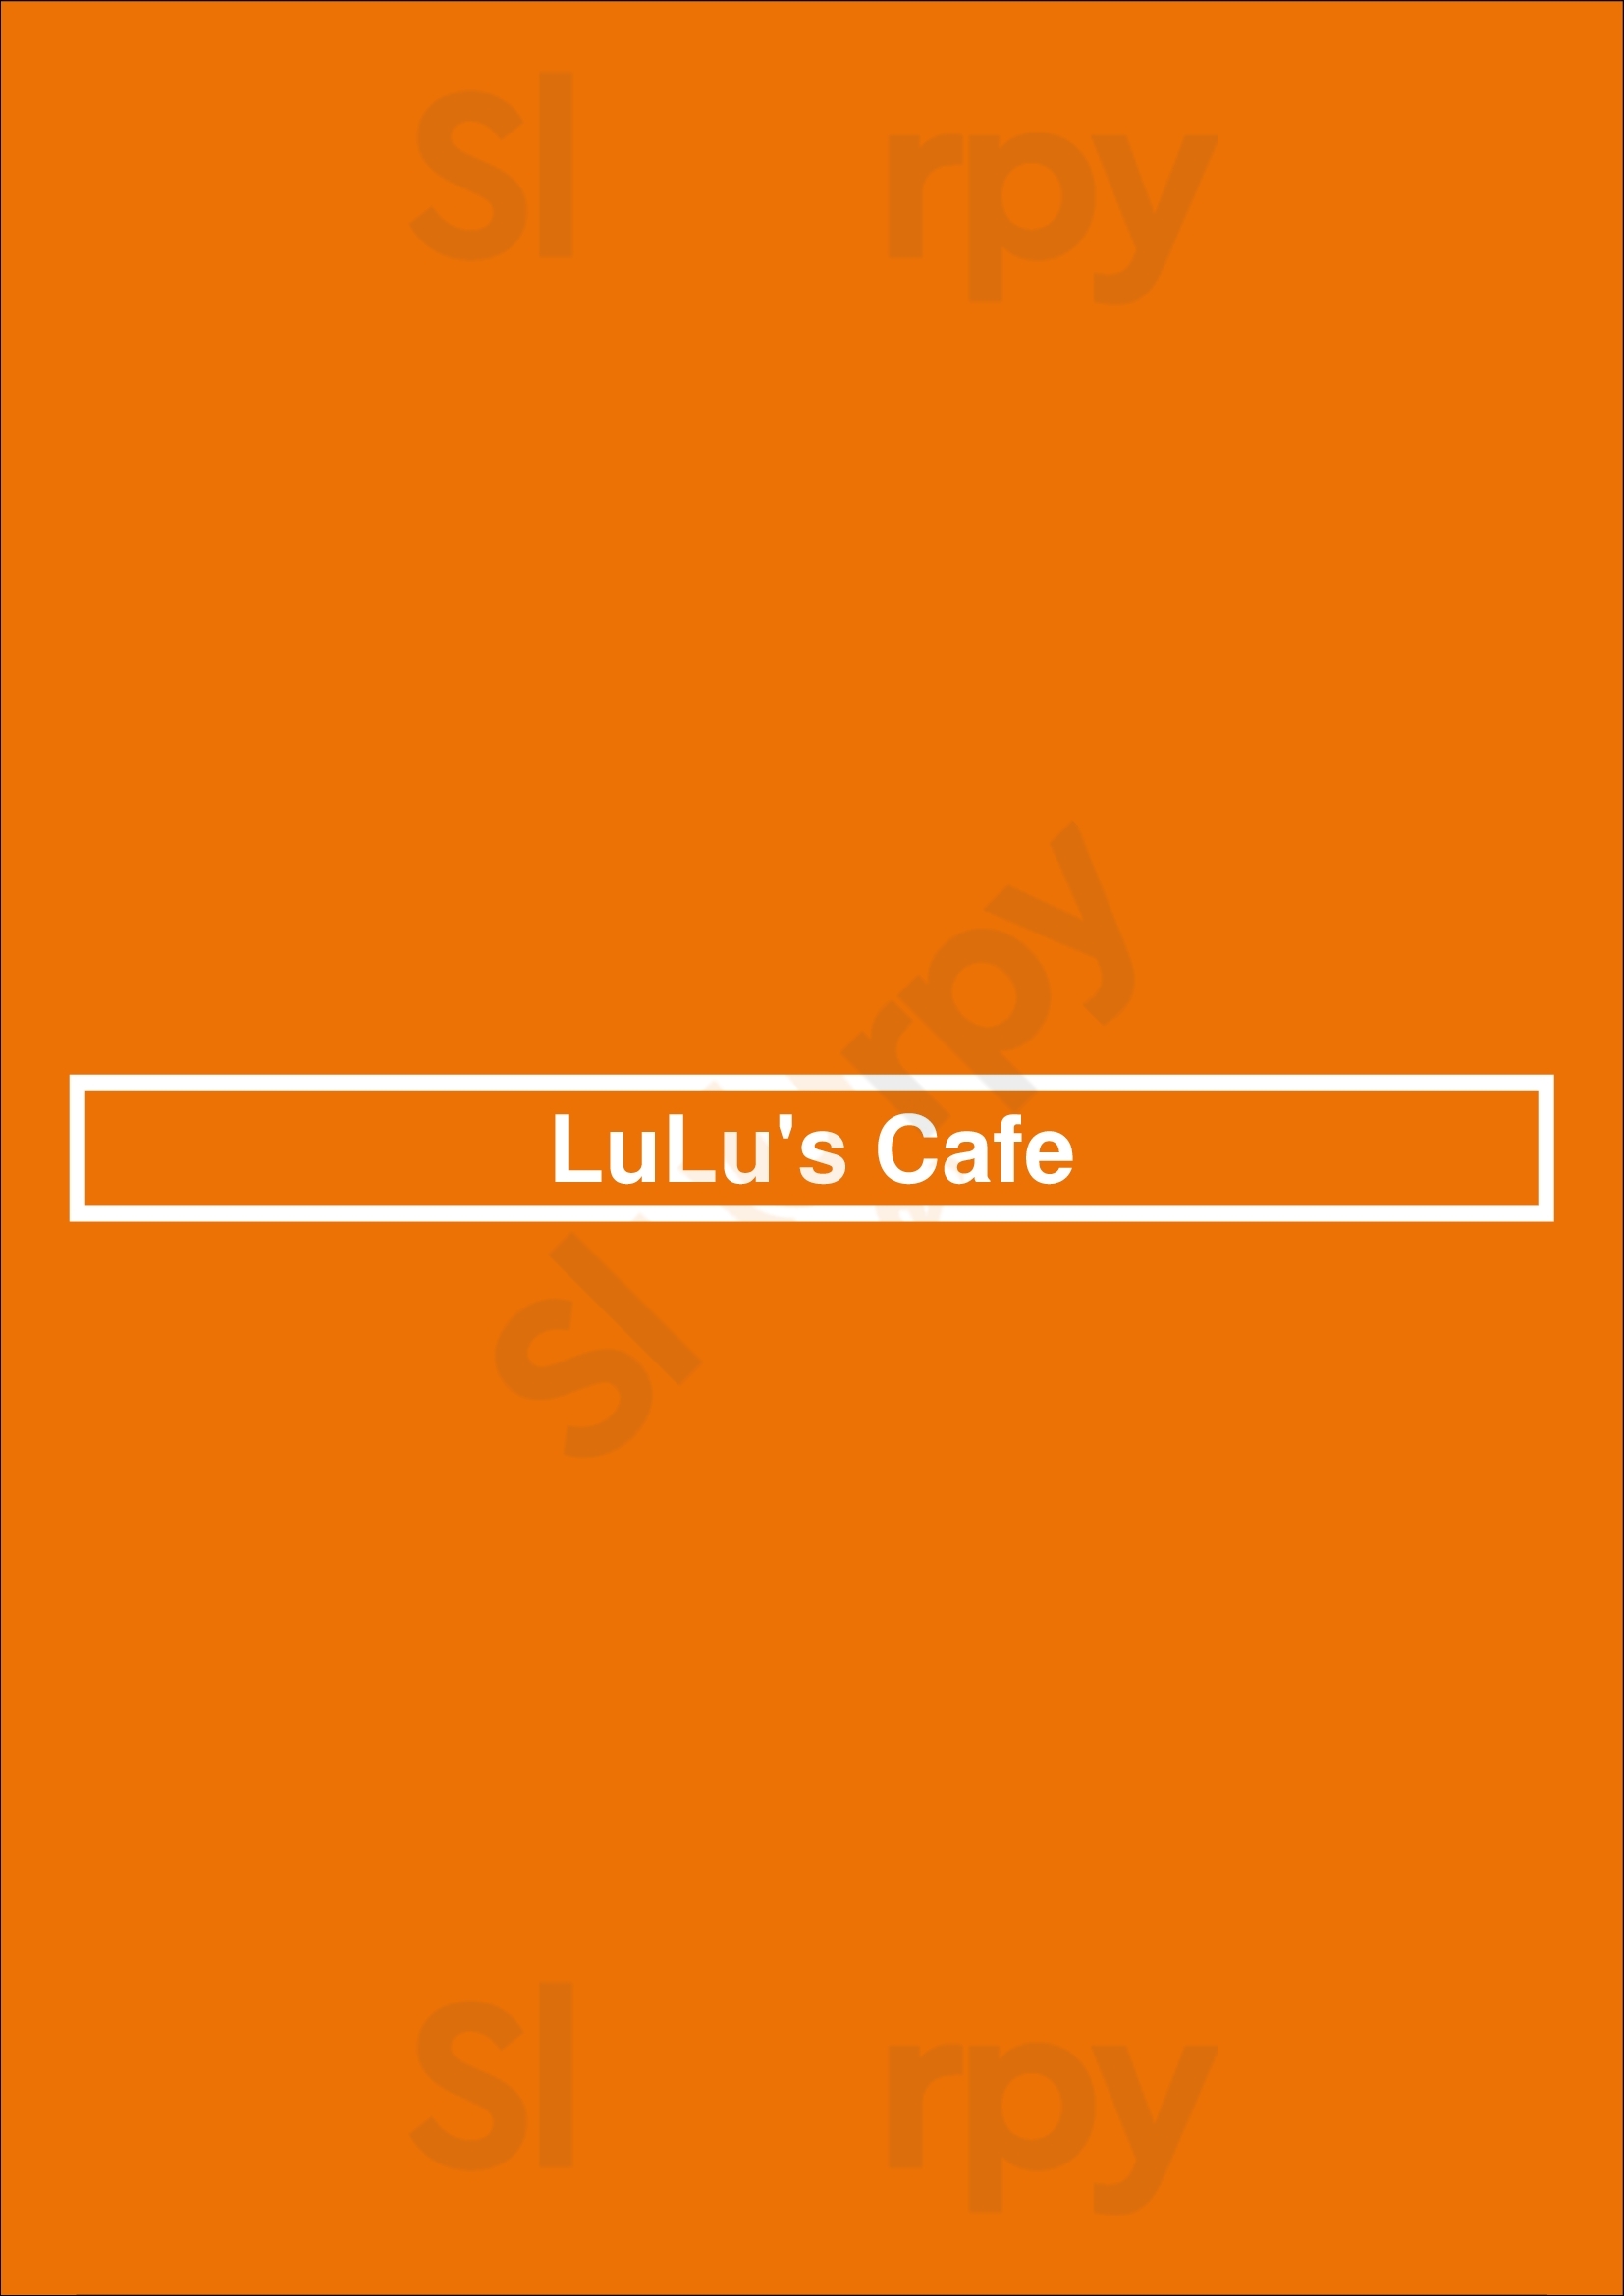 Lulu's Cafe Los Angeles Menu - 1